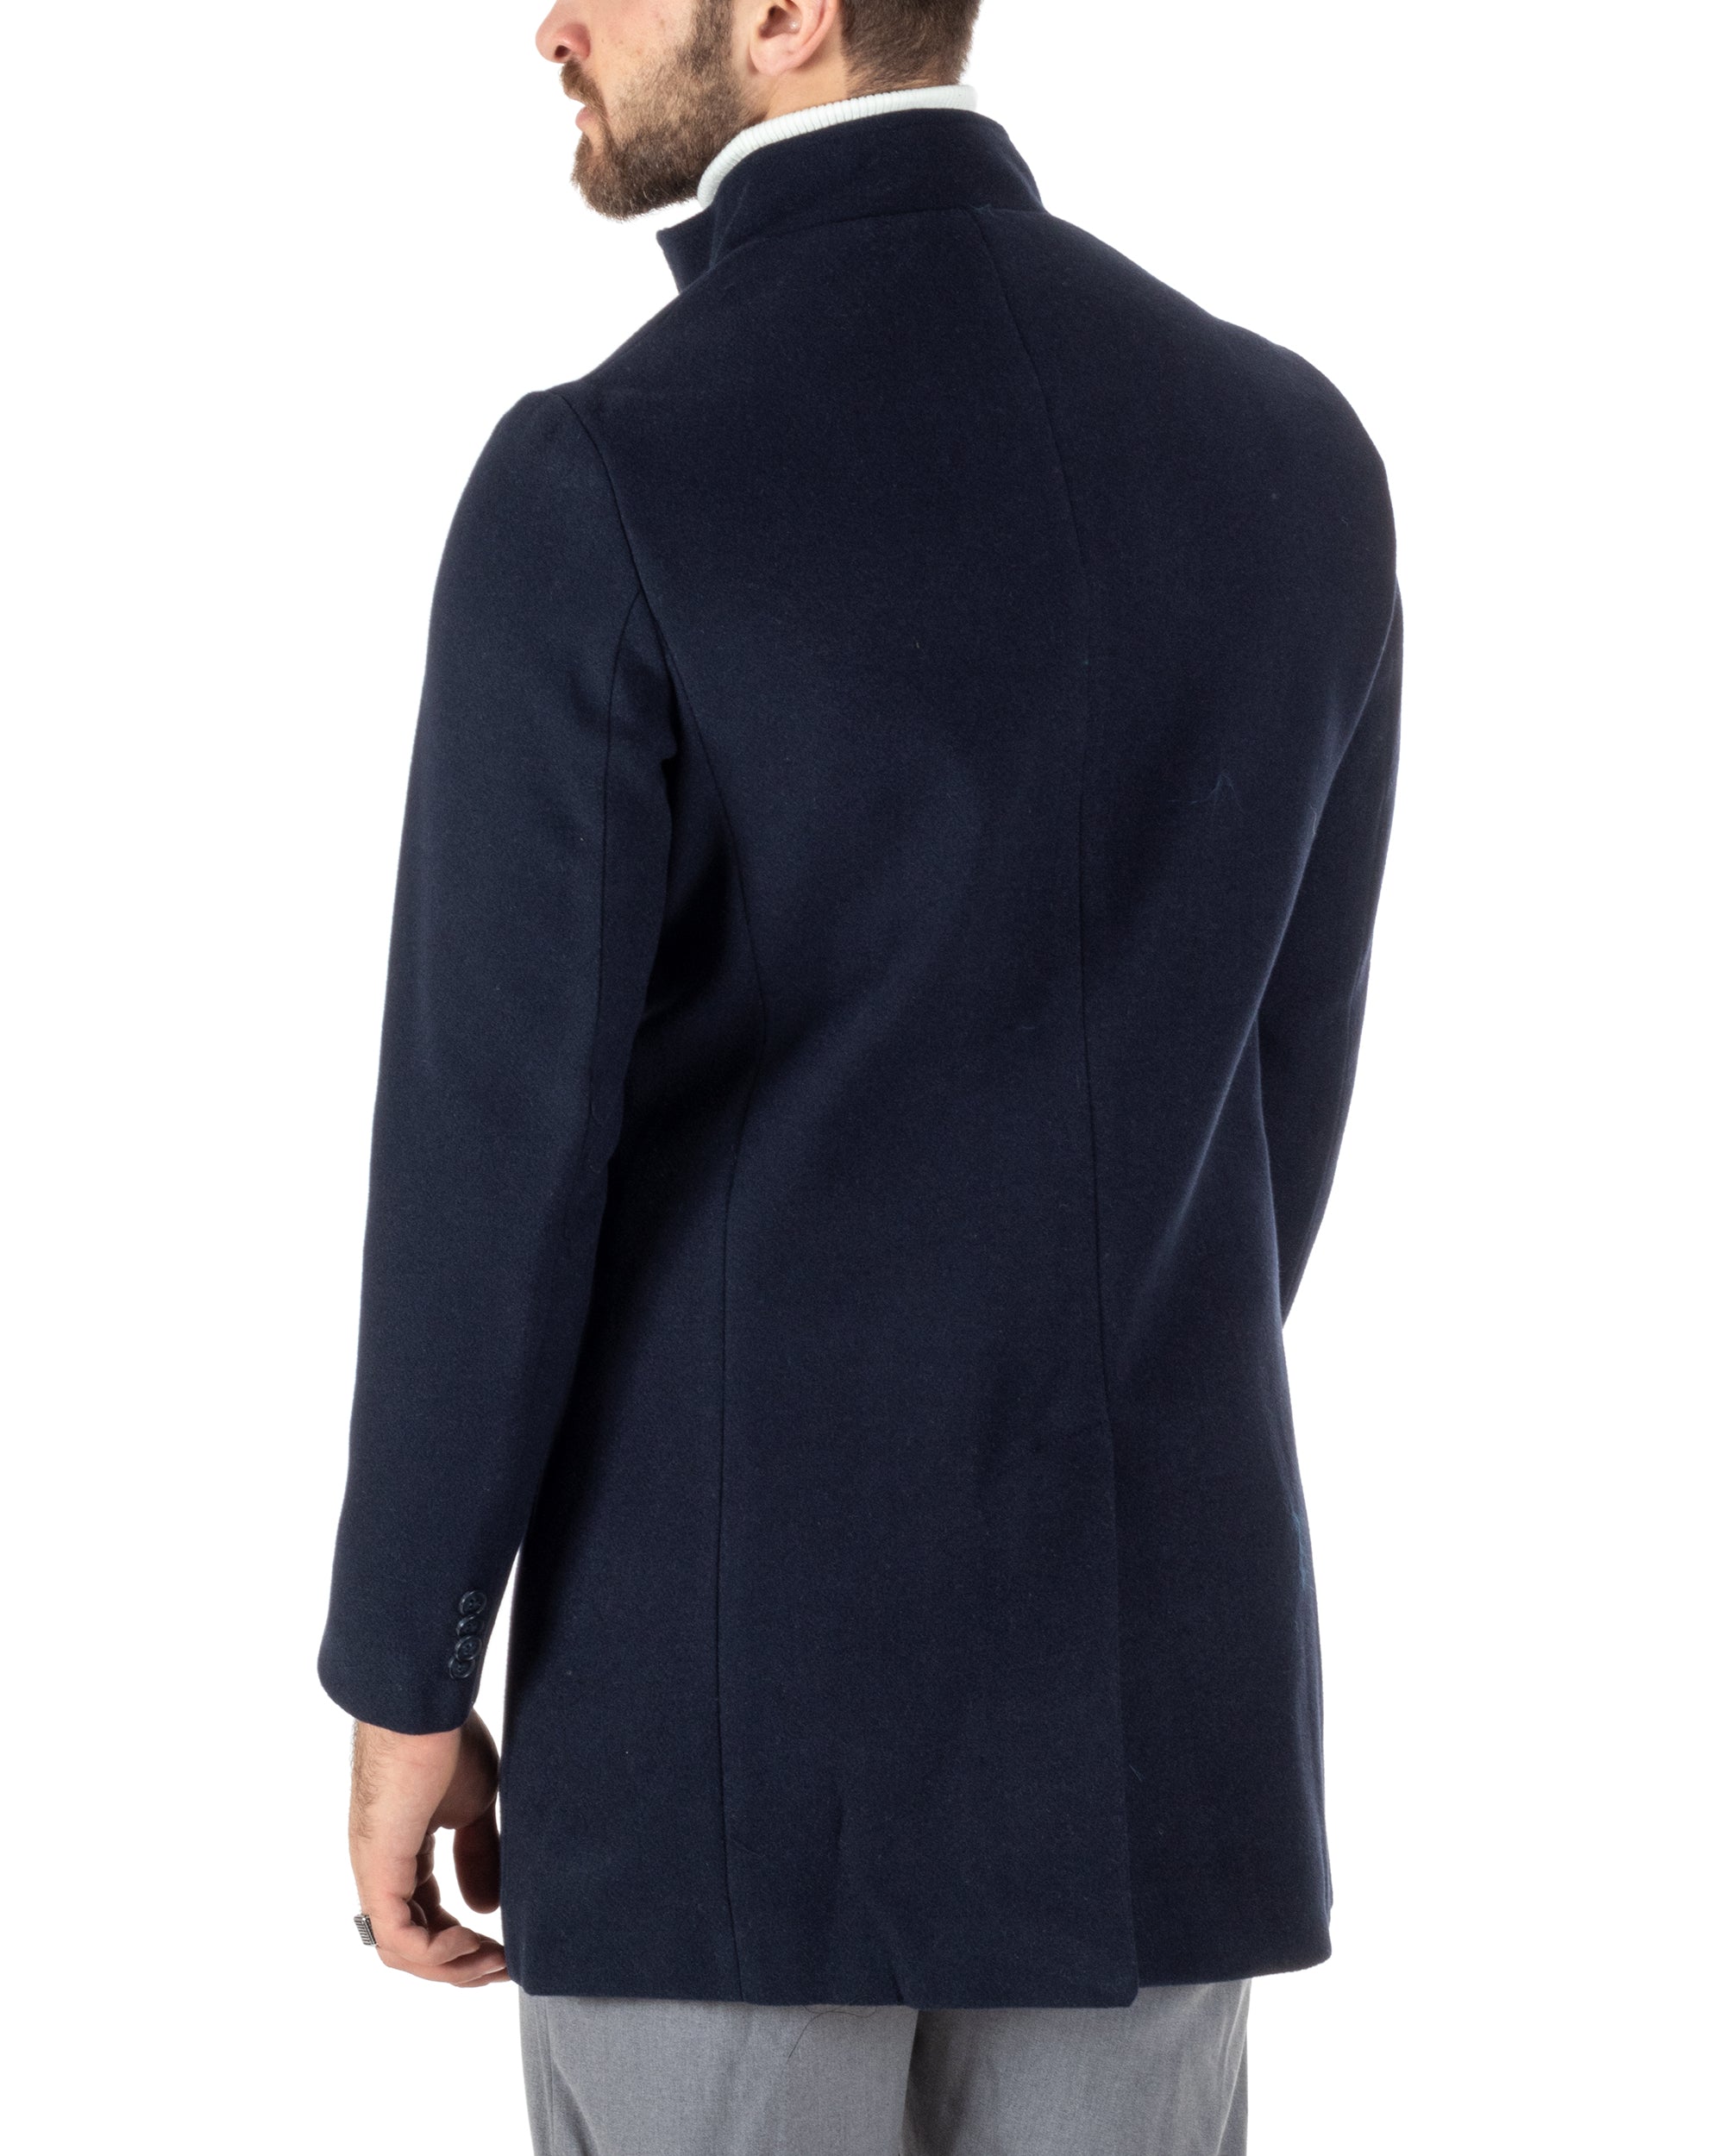 Cappotto Monopetto Uomo Giacca Collo Coreano Giaccone Lungo Blu Baronetto Elegante GIOSAL-CO1018A